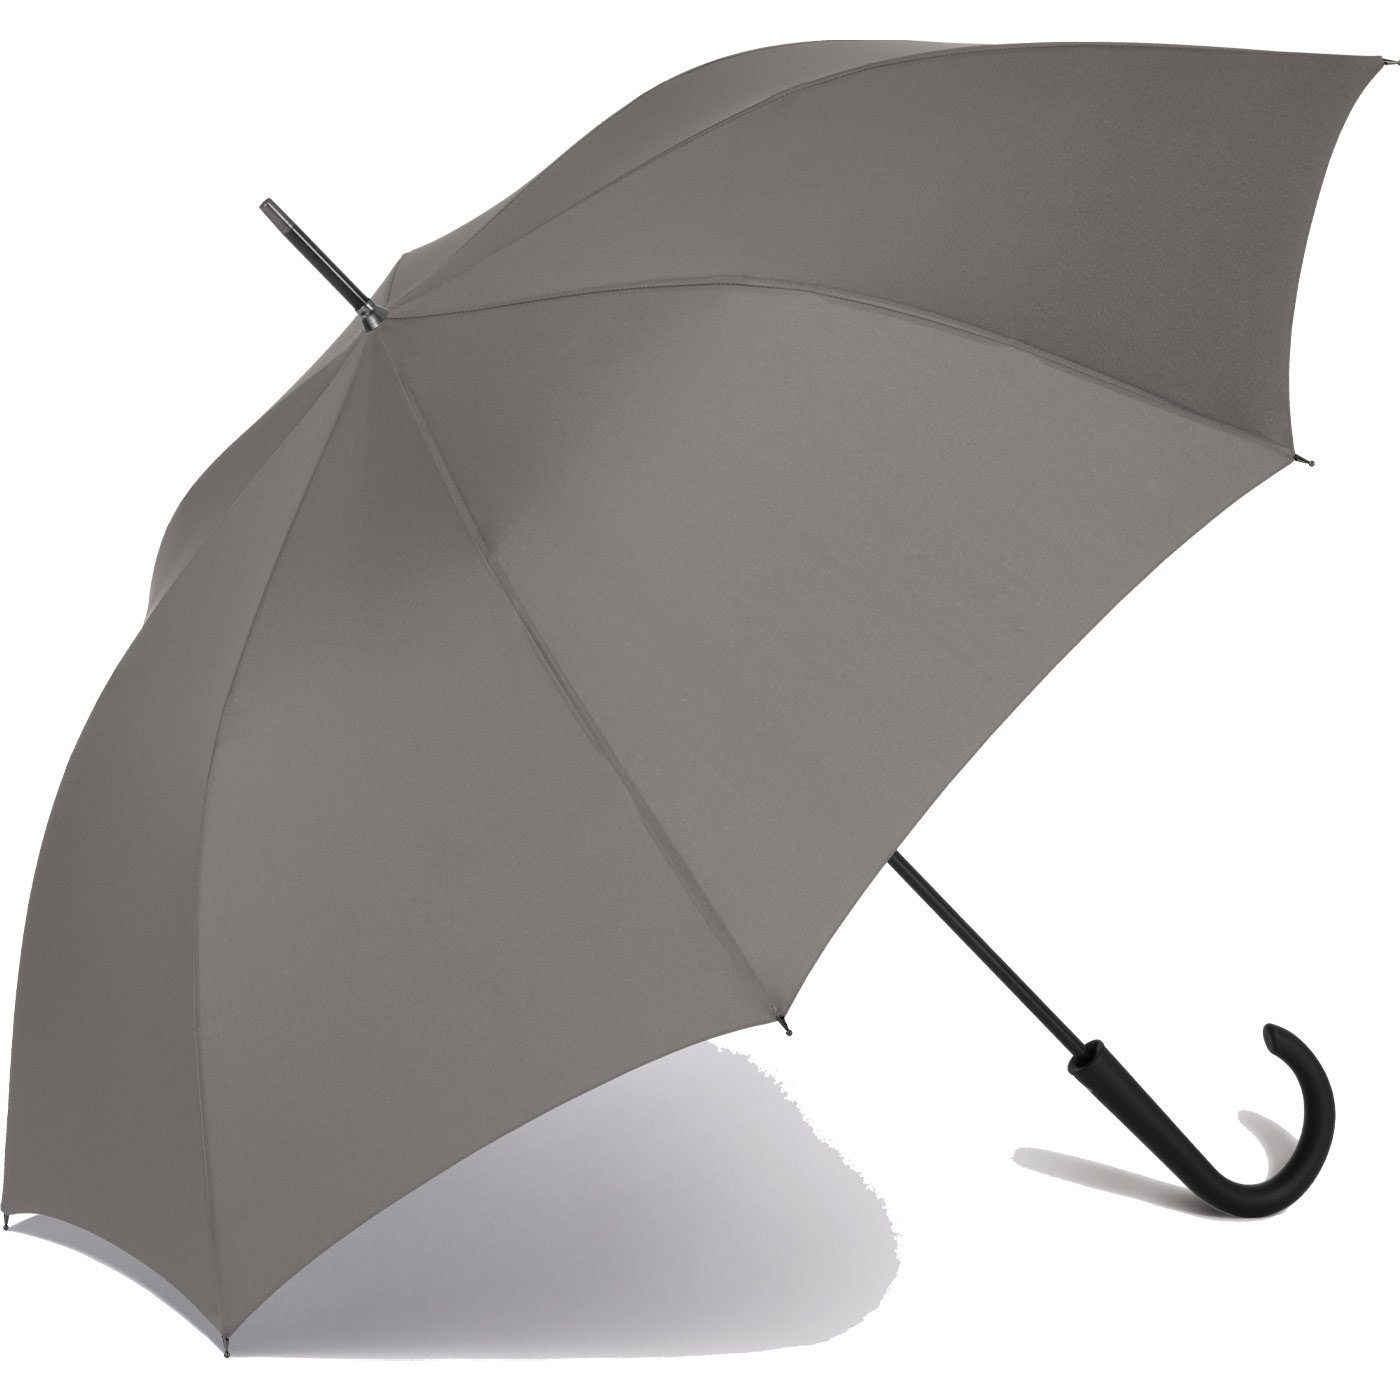 integrierter Regenschirm Auf-Automatik, mit Auslöseknopf grau RS-Versand Langregenschirm stabiler großer Stahl-Fiberglas-Gestell,